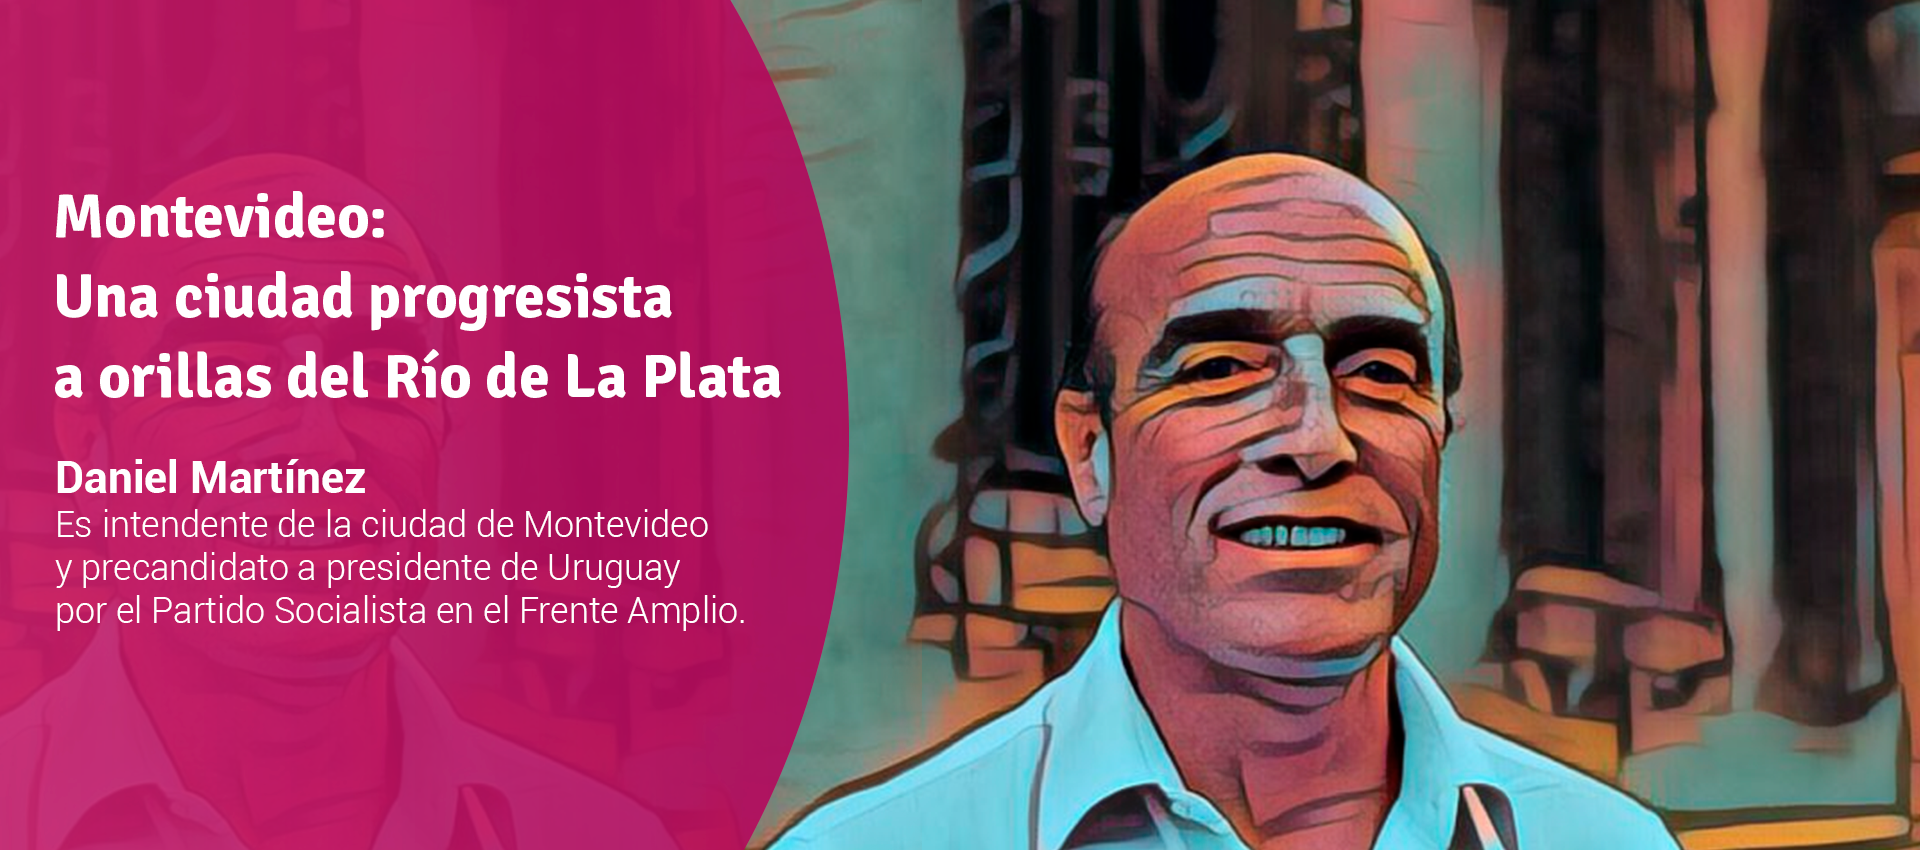 Daniel Martinez - Montevideo: una ciudad progresista a orillas del Río de La Plata